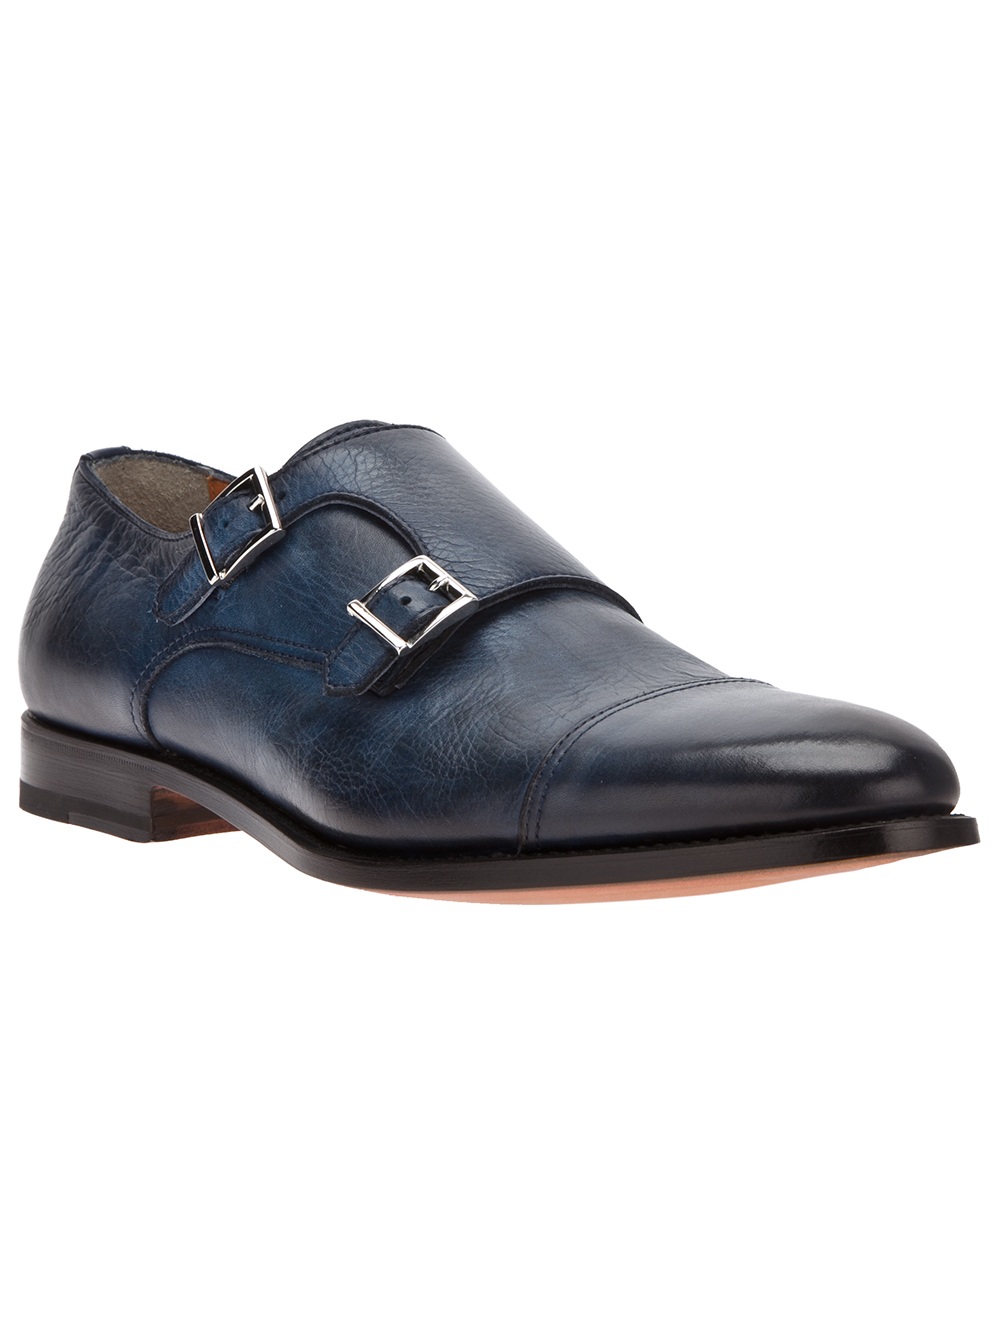 Santoni Double Strap Monk Shoe in Blue for Men - Lyst